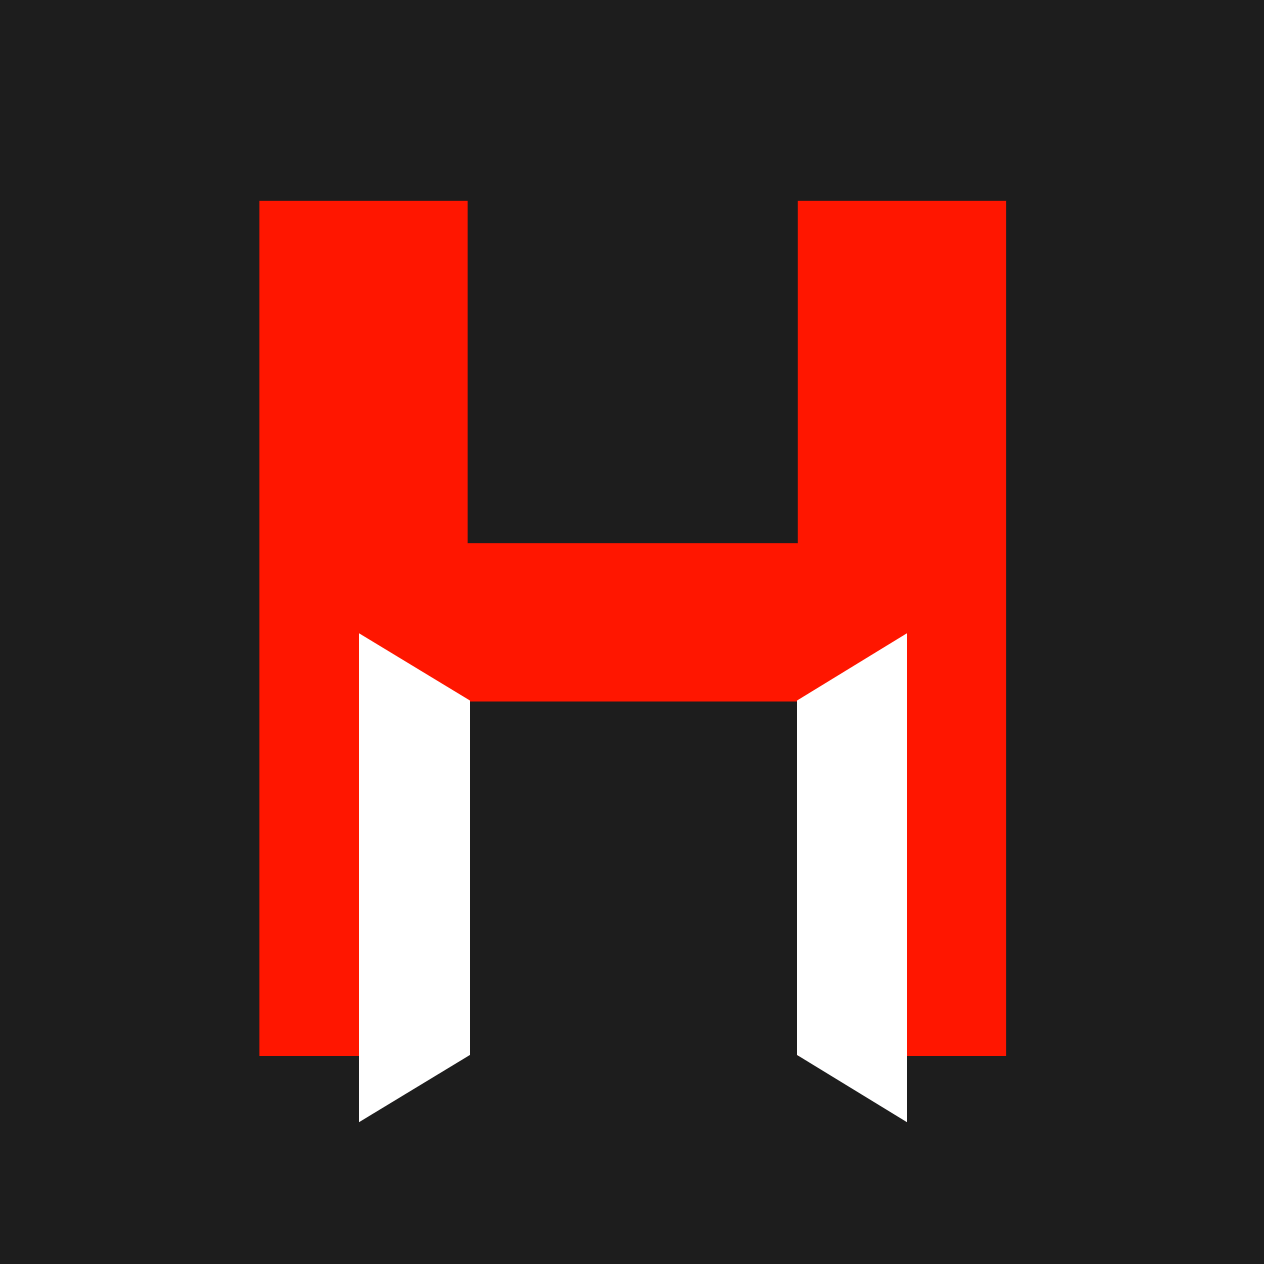 Red Open Square Logo - Harvard Square Homeless Shelter